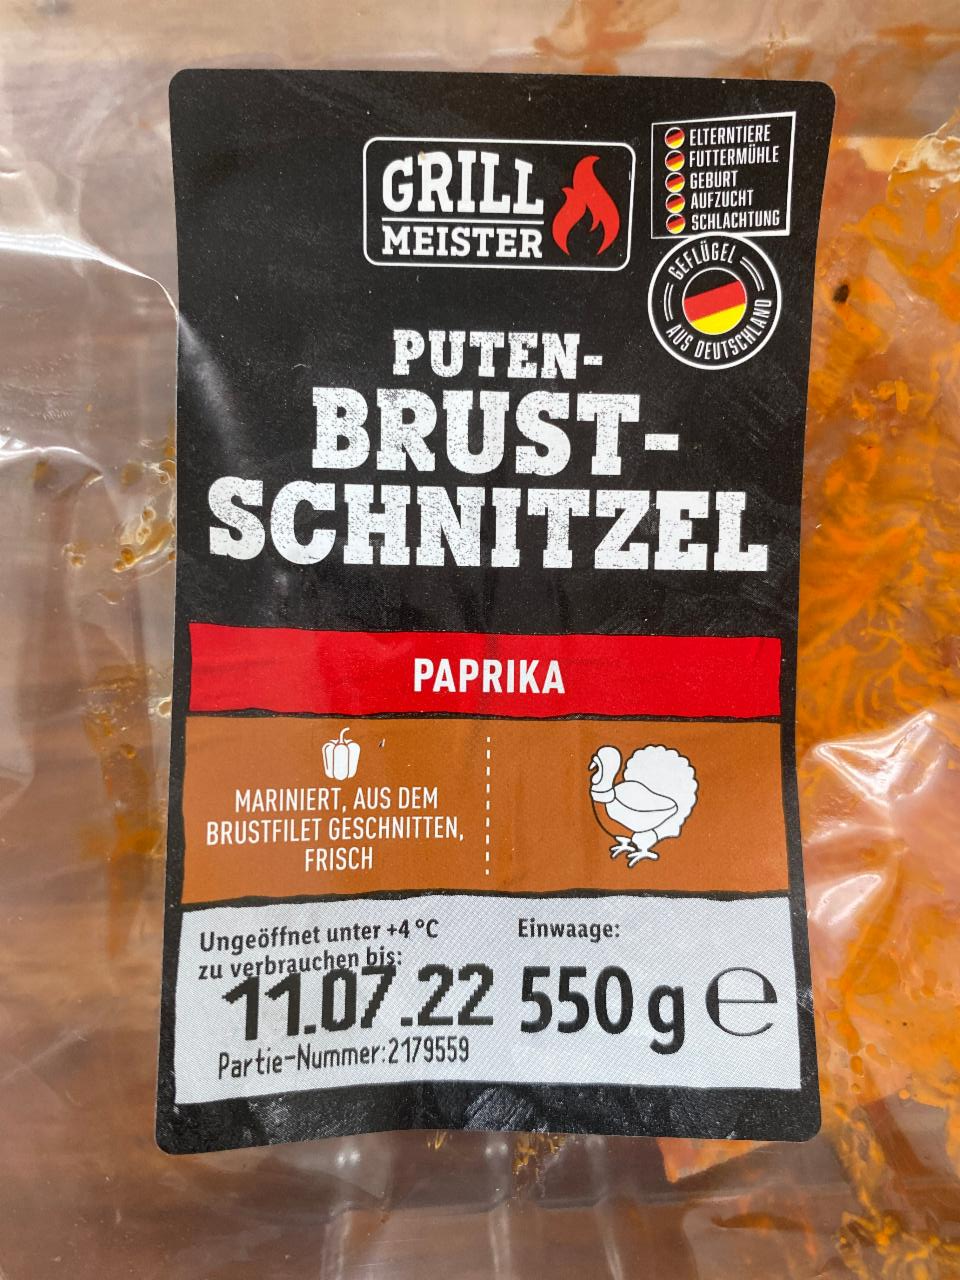 kalorie, kJ Brust Grill a Schnitzel - hodnoty Meister nutriční Paprika Puten